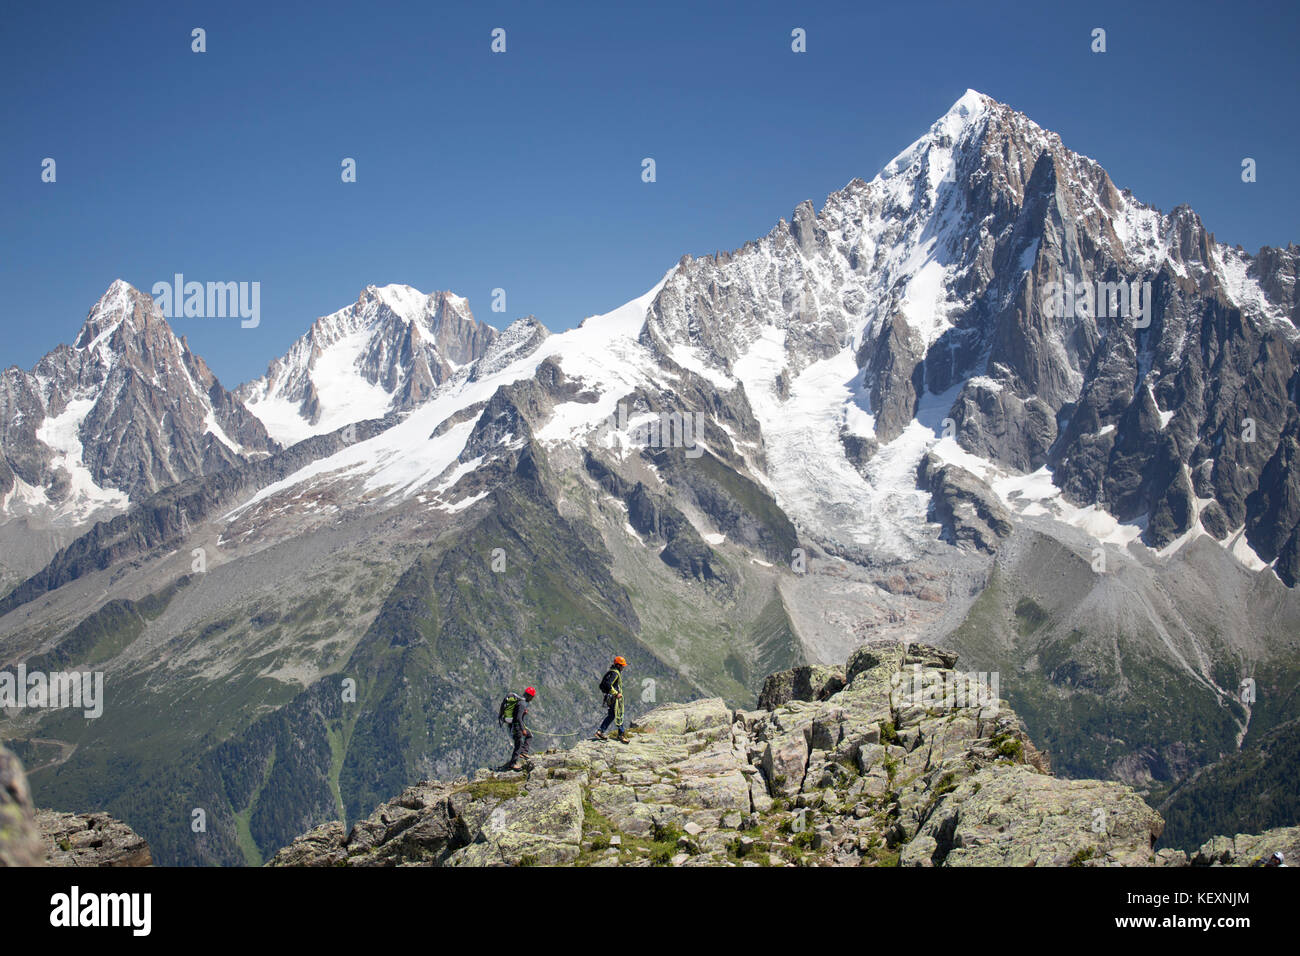 Dos montañeros en una cresta rocosa encima de Chamonix, en los Alpes franceses. Foto de stock